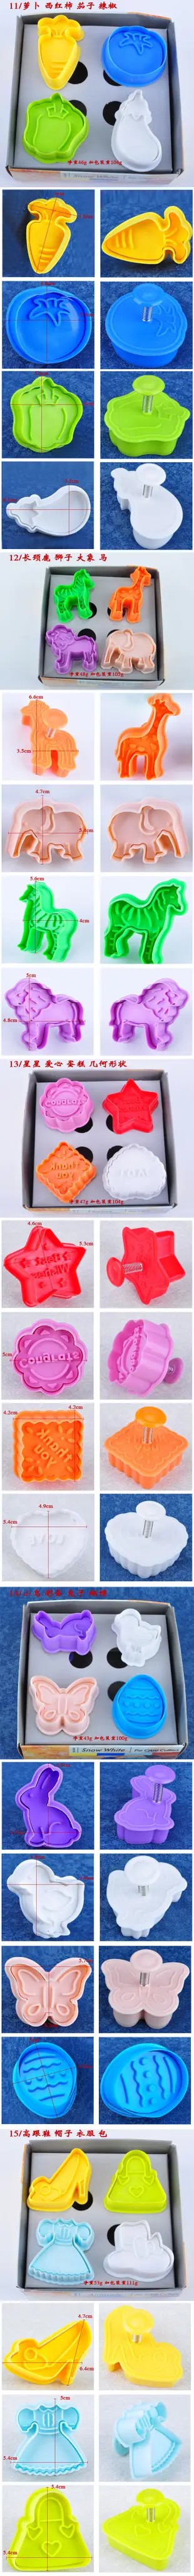 4支裝3D立體卡通餅干模具DIY翻糖蛋糕模具彈簧立體烘焙餅干模19款